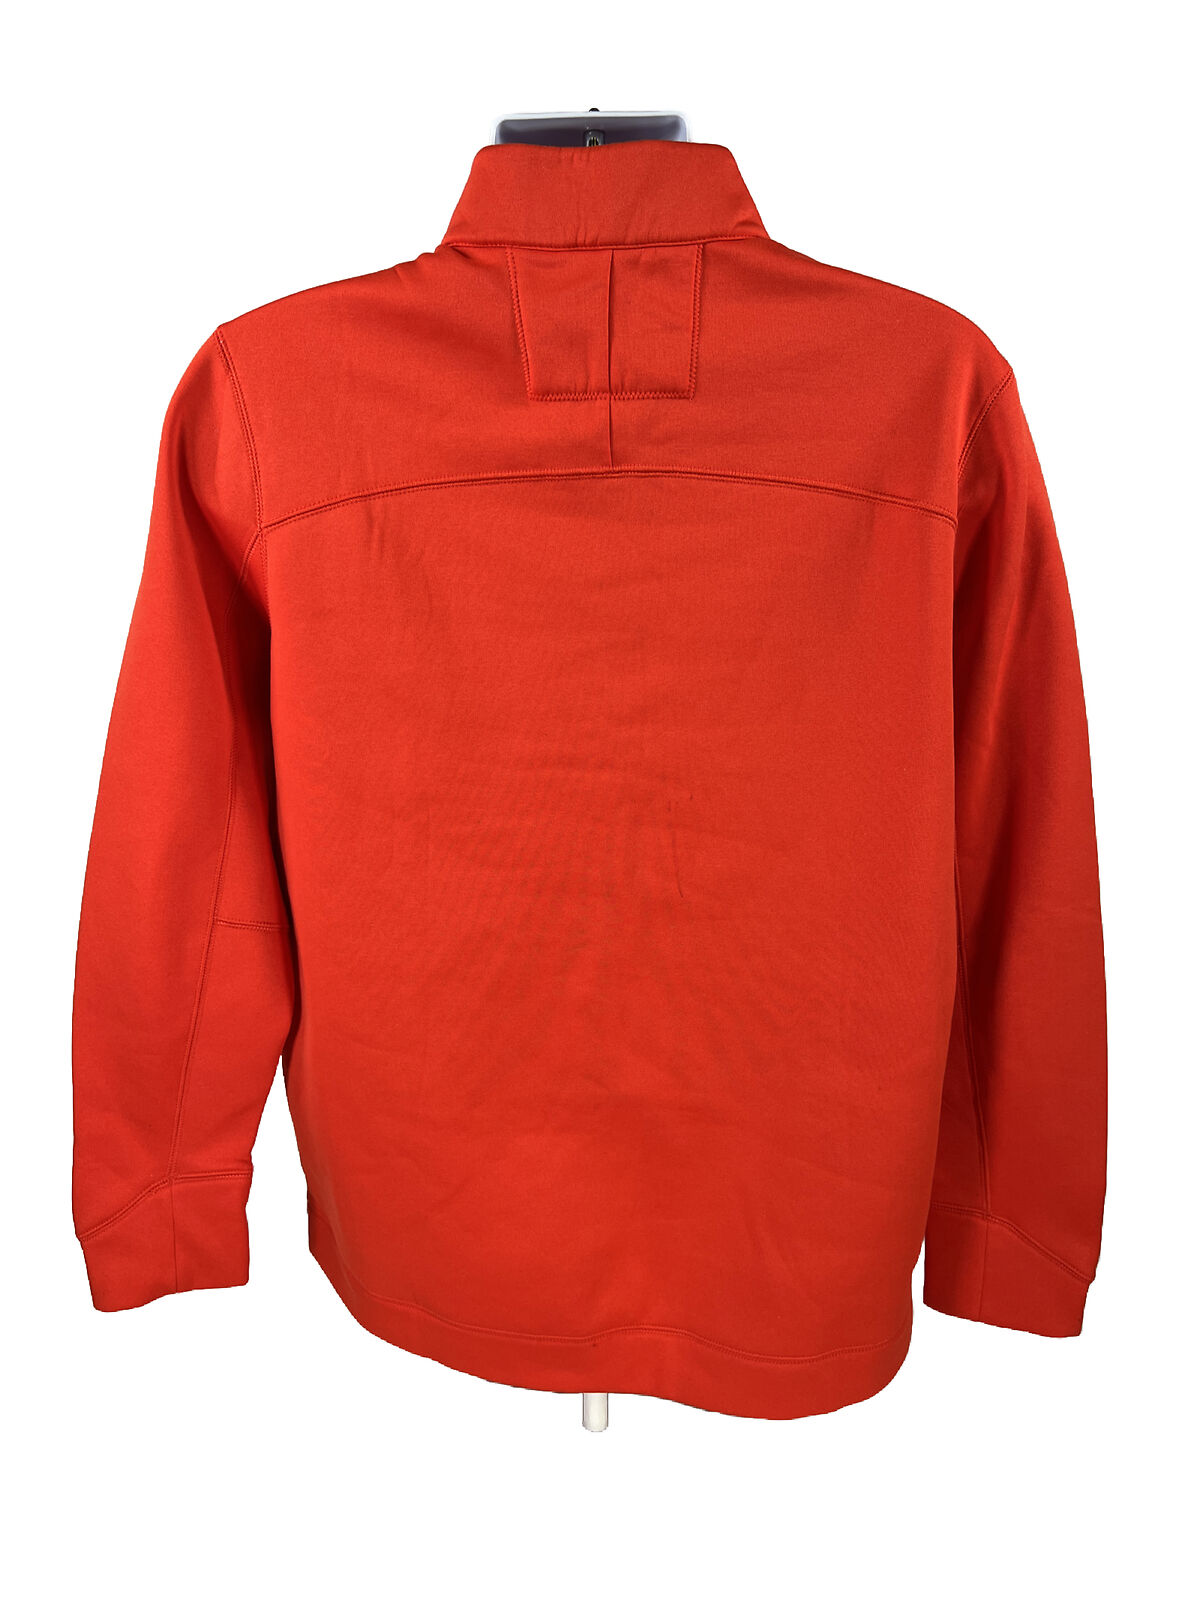 Nike Men's Orange Fleece Lined Golf 1/4 Zip Pullover Sweatshirt - L